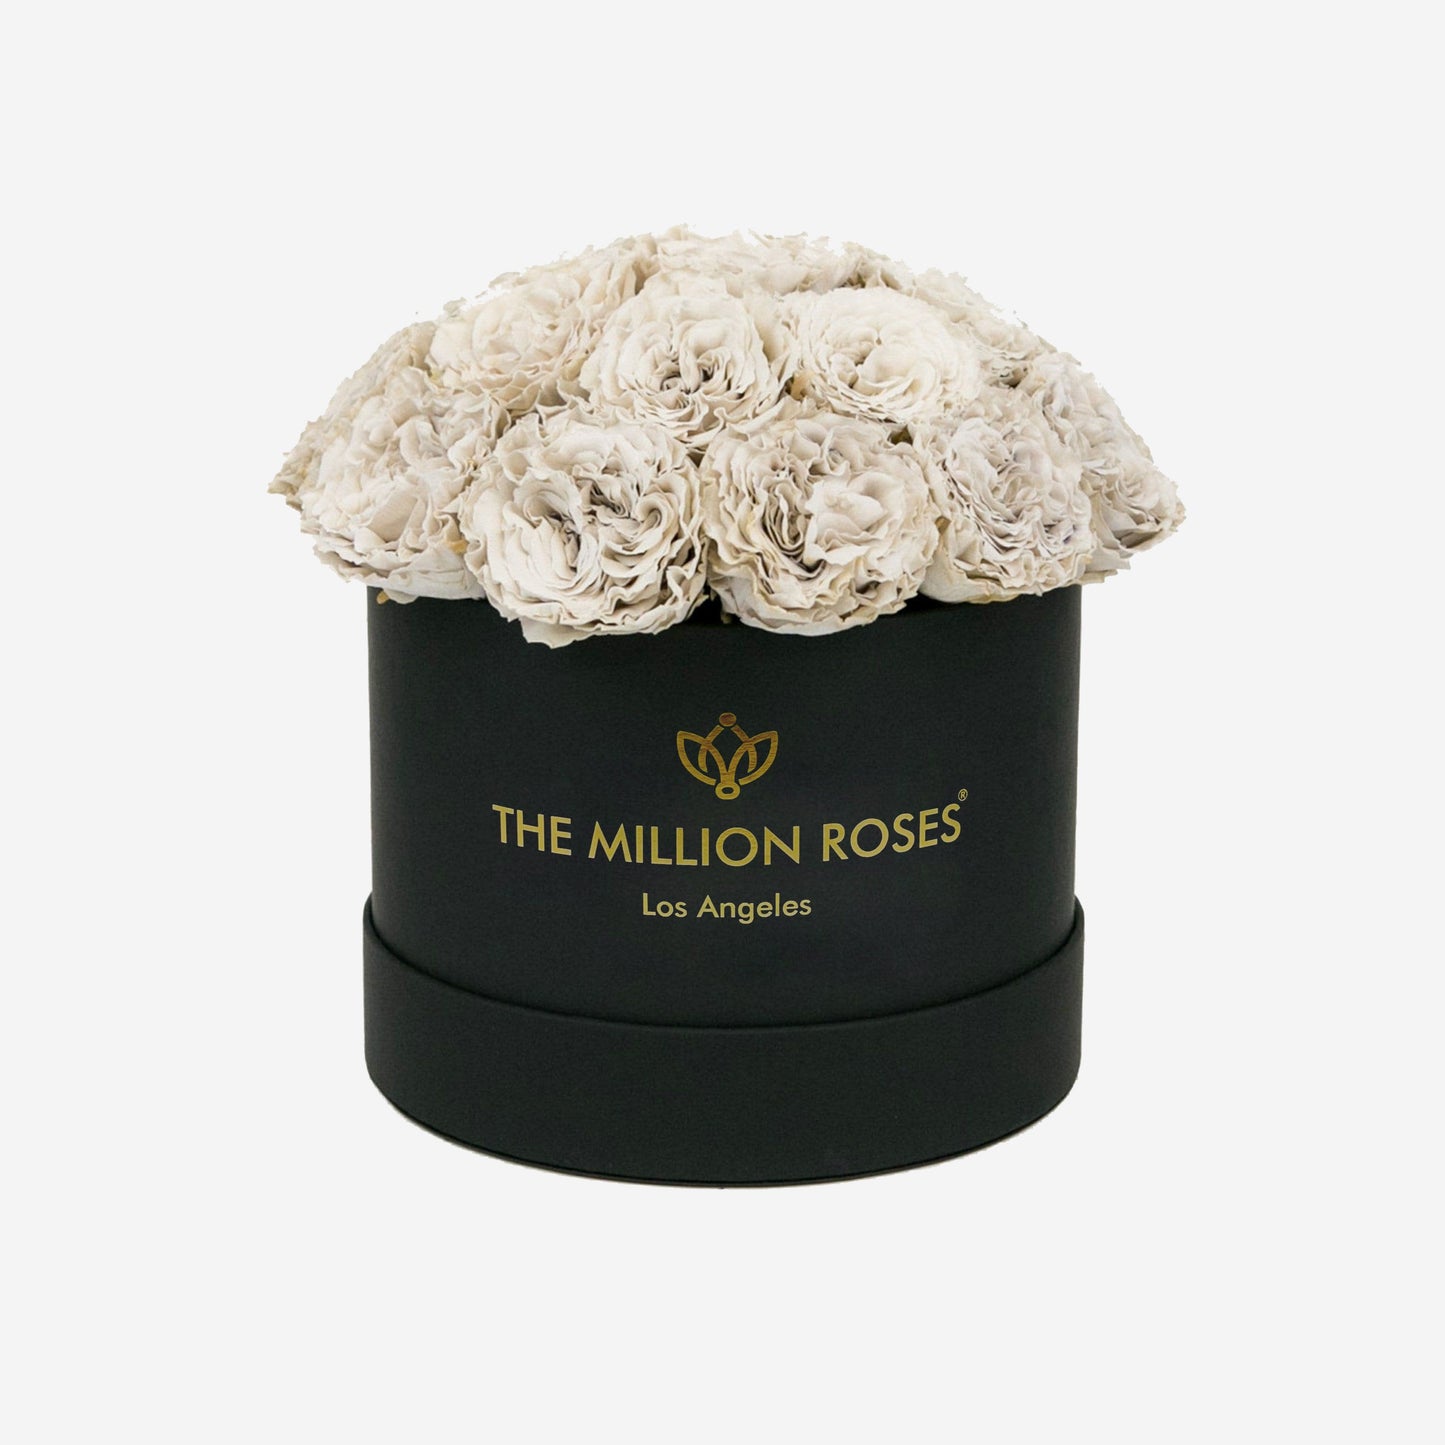 Classic Black Dome Box | Off White Carmen Roses - The Million Roses